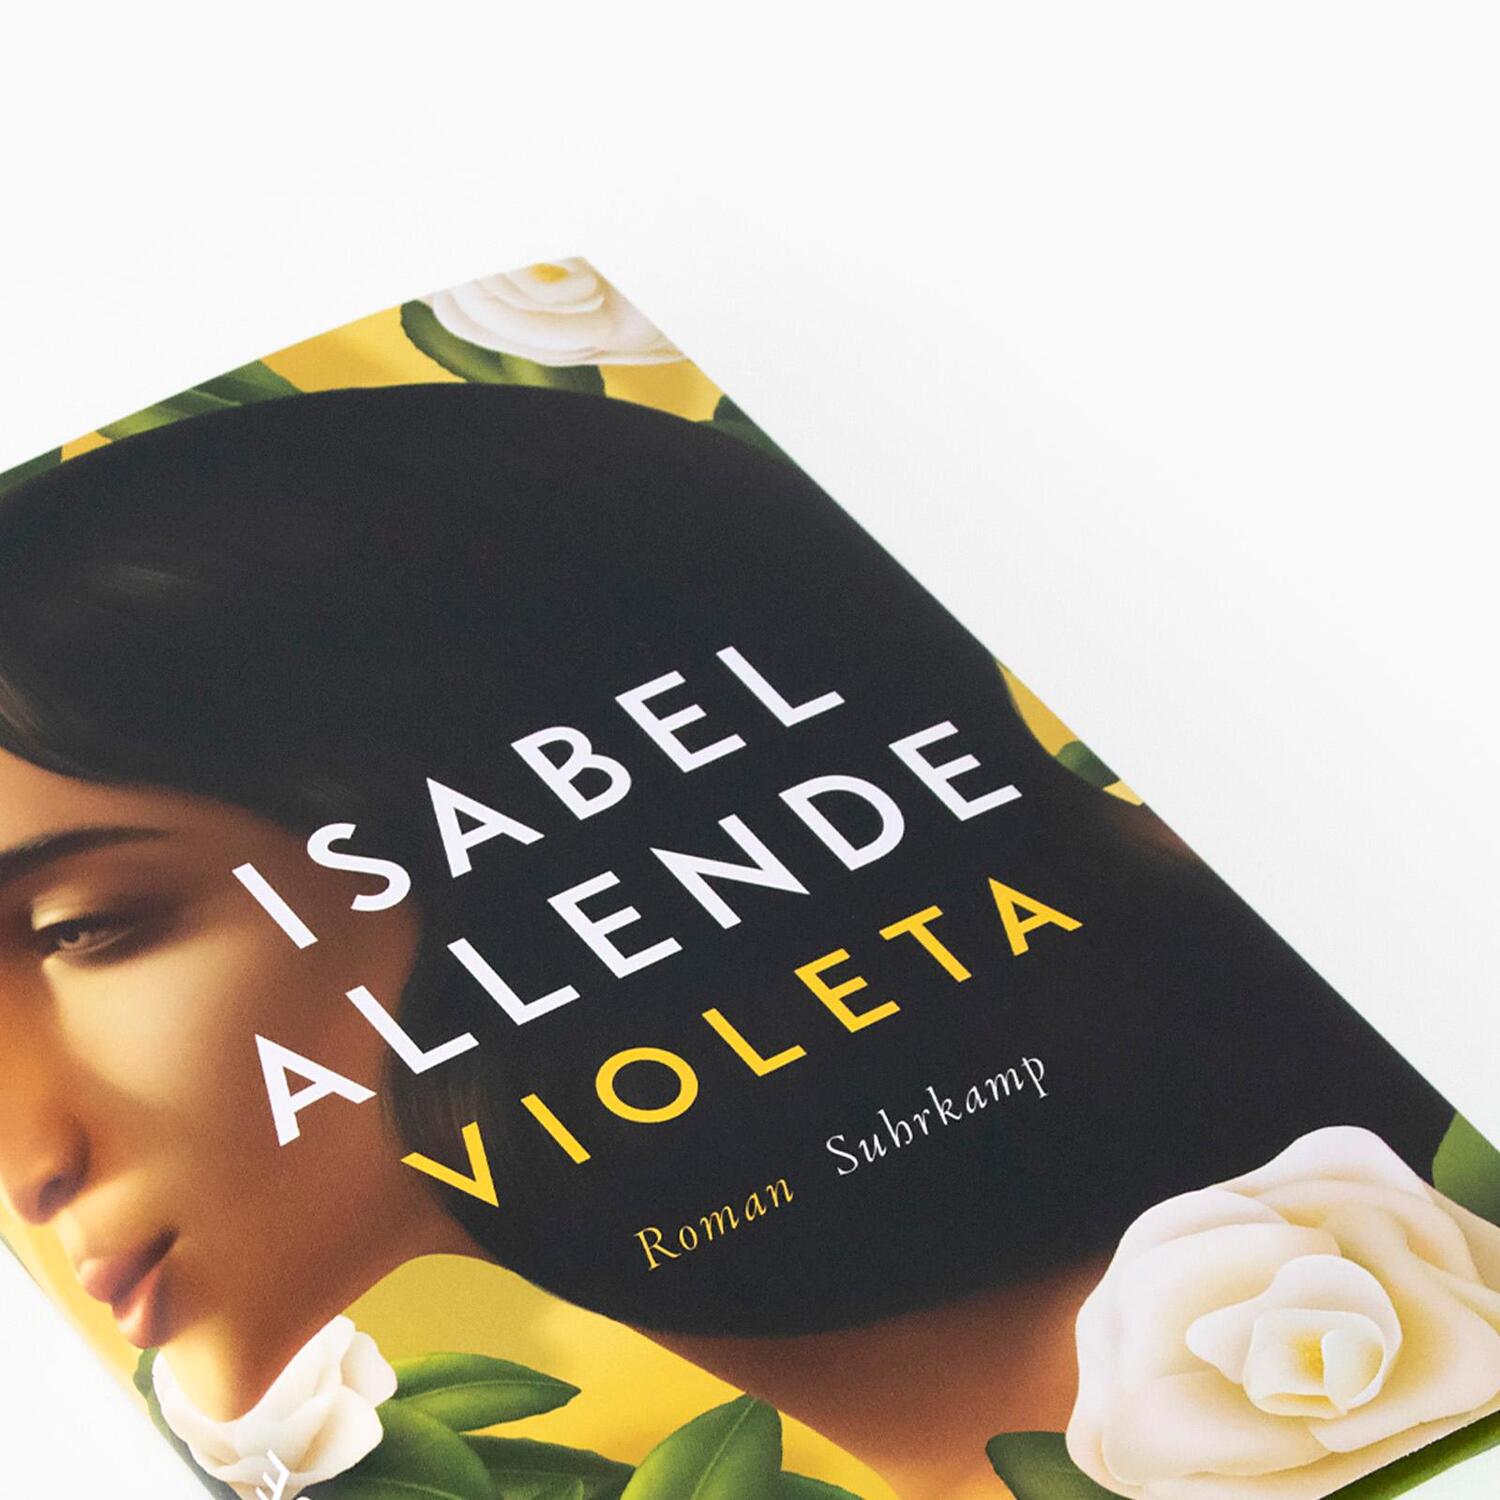 Bild: 9783518430163 | Violeta | Isabel Allende | Buch | 400 S. | Deutsch | 2022 | Suhrkamp